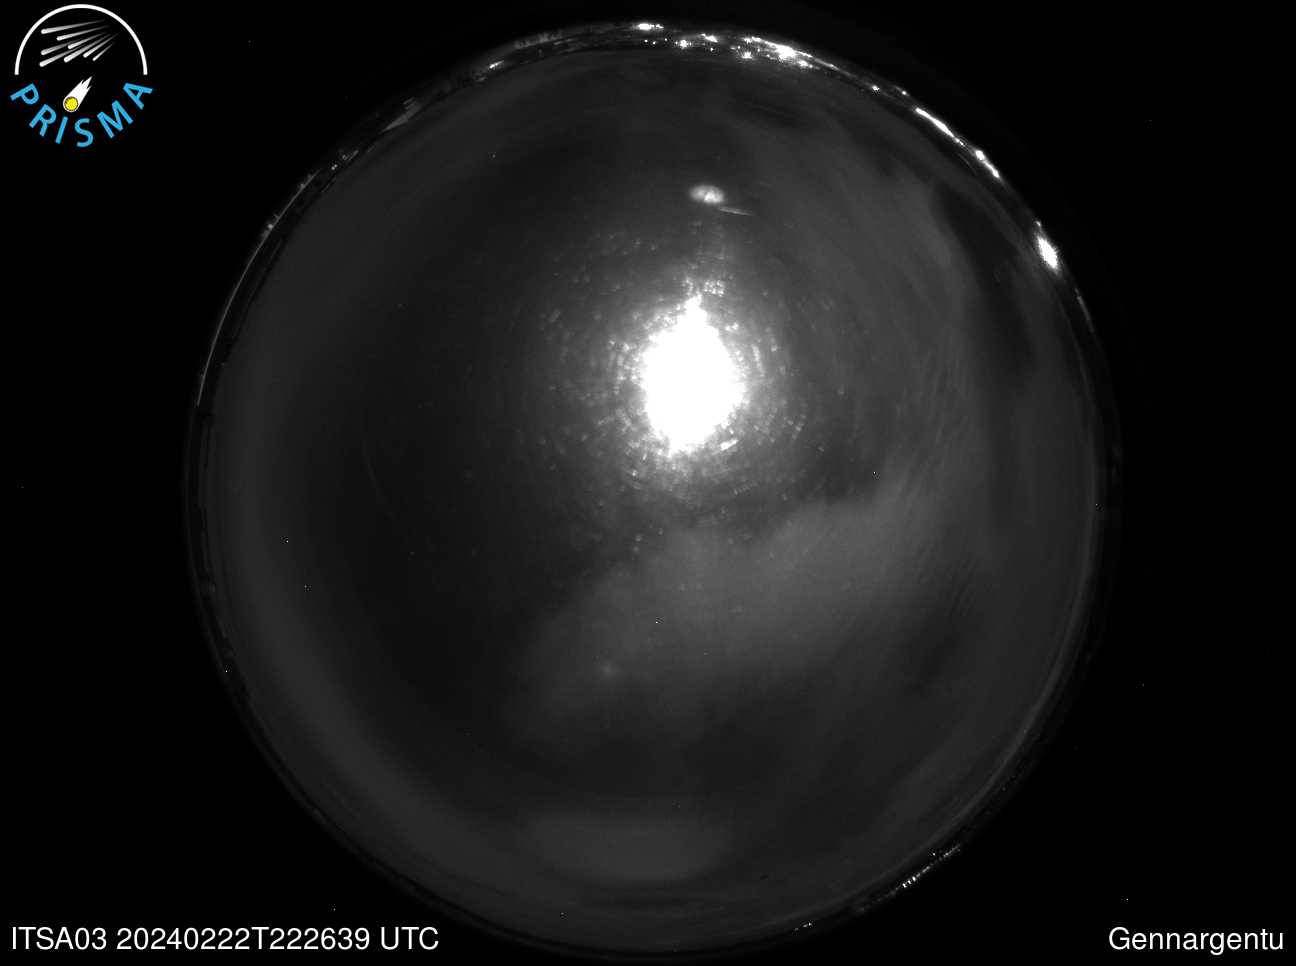 Full size image detection Gennargentu (ITSA03) Universal Time